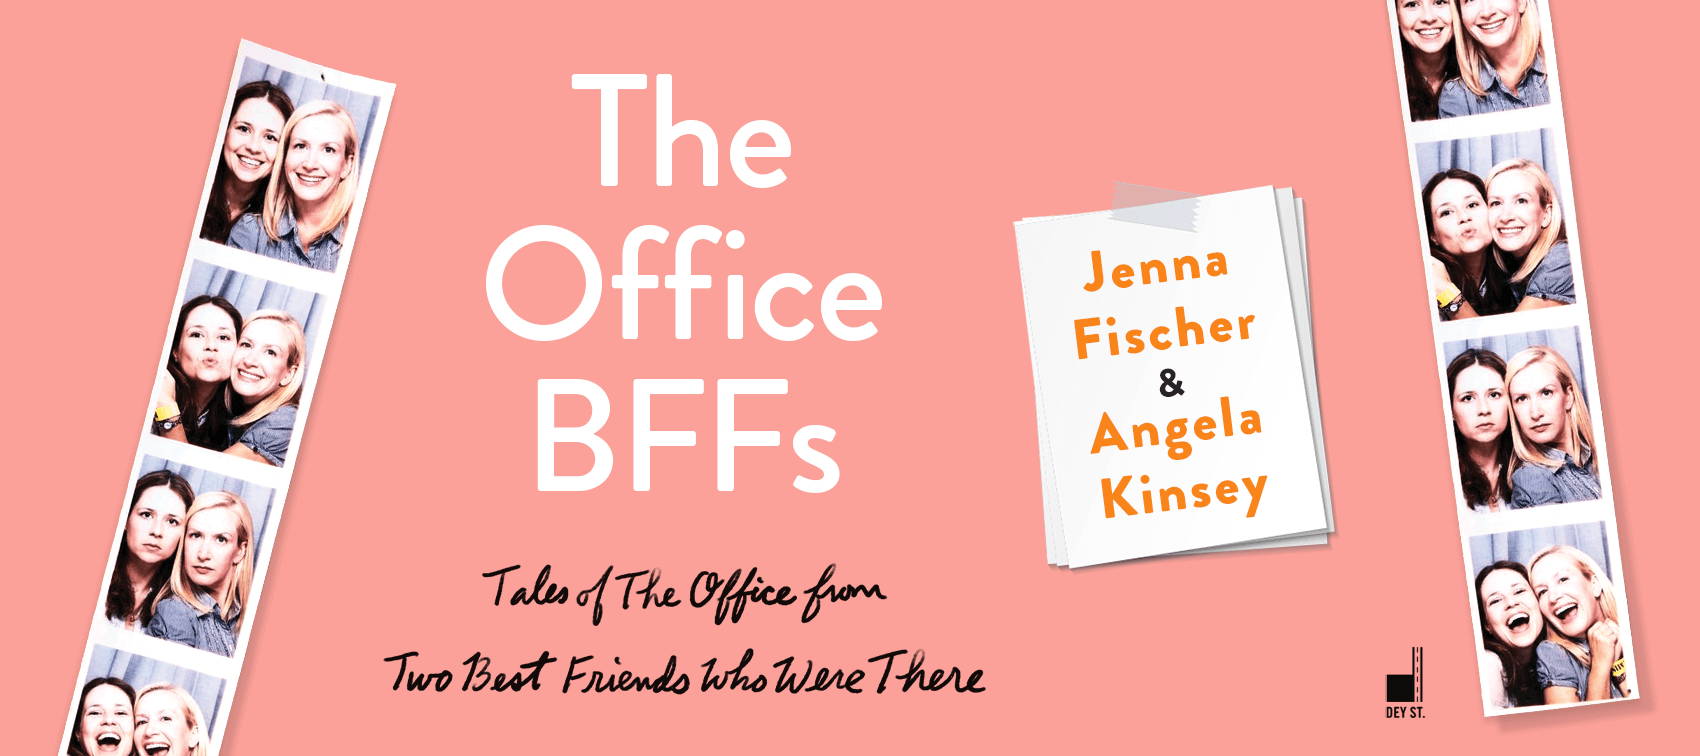 The Office BFFs by Jenna Fischer & Angela Kinsey – HarperCollins